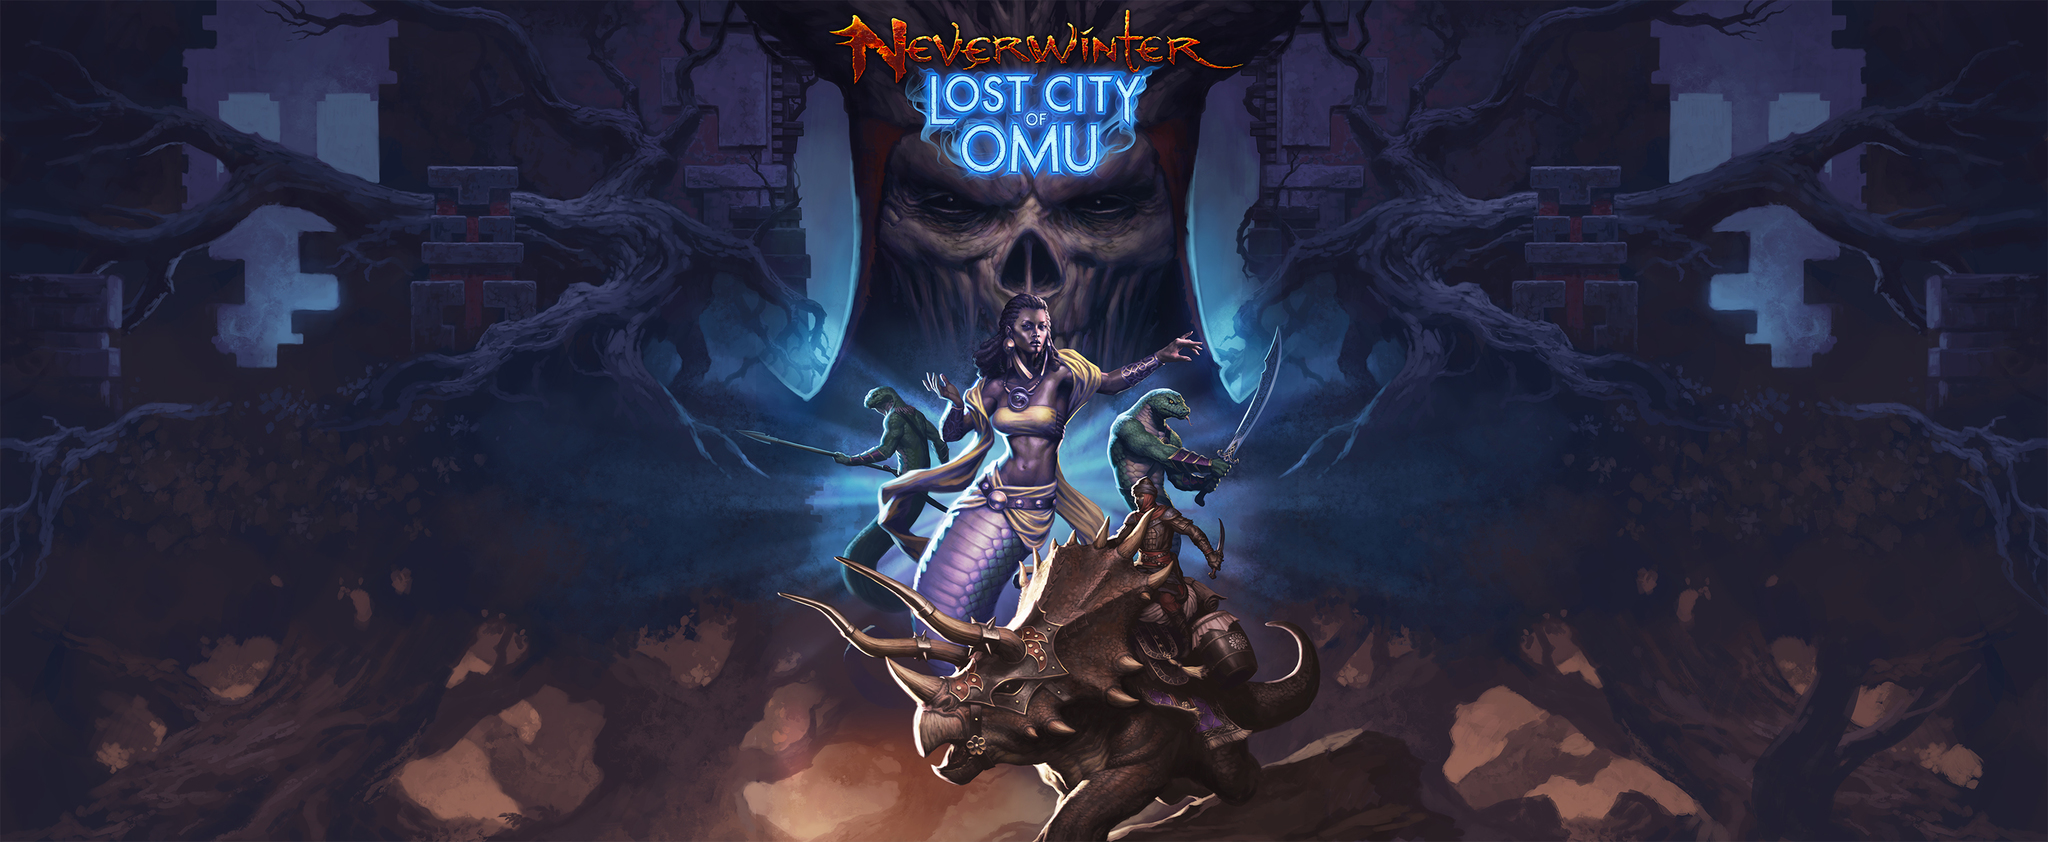 Am 27. Februar 2018 erscheint die neue Erweiterung "Lost City of Omu" für Neverwinter: Quelle: Arc Games